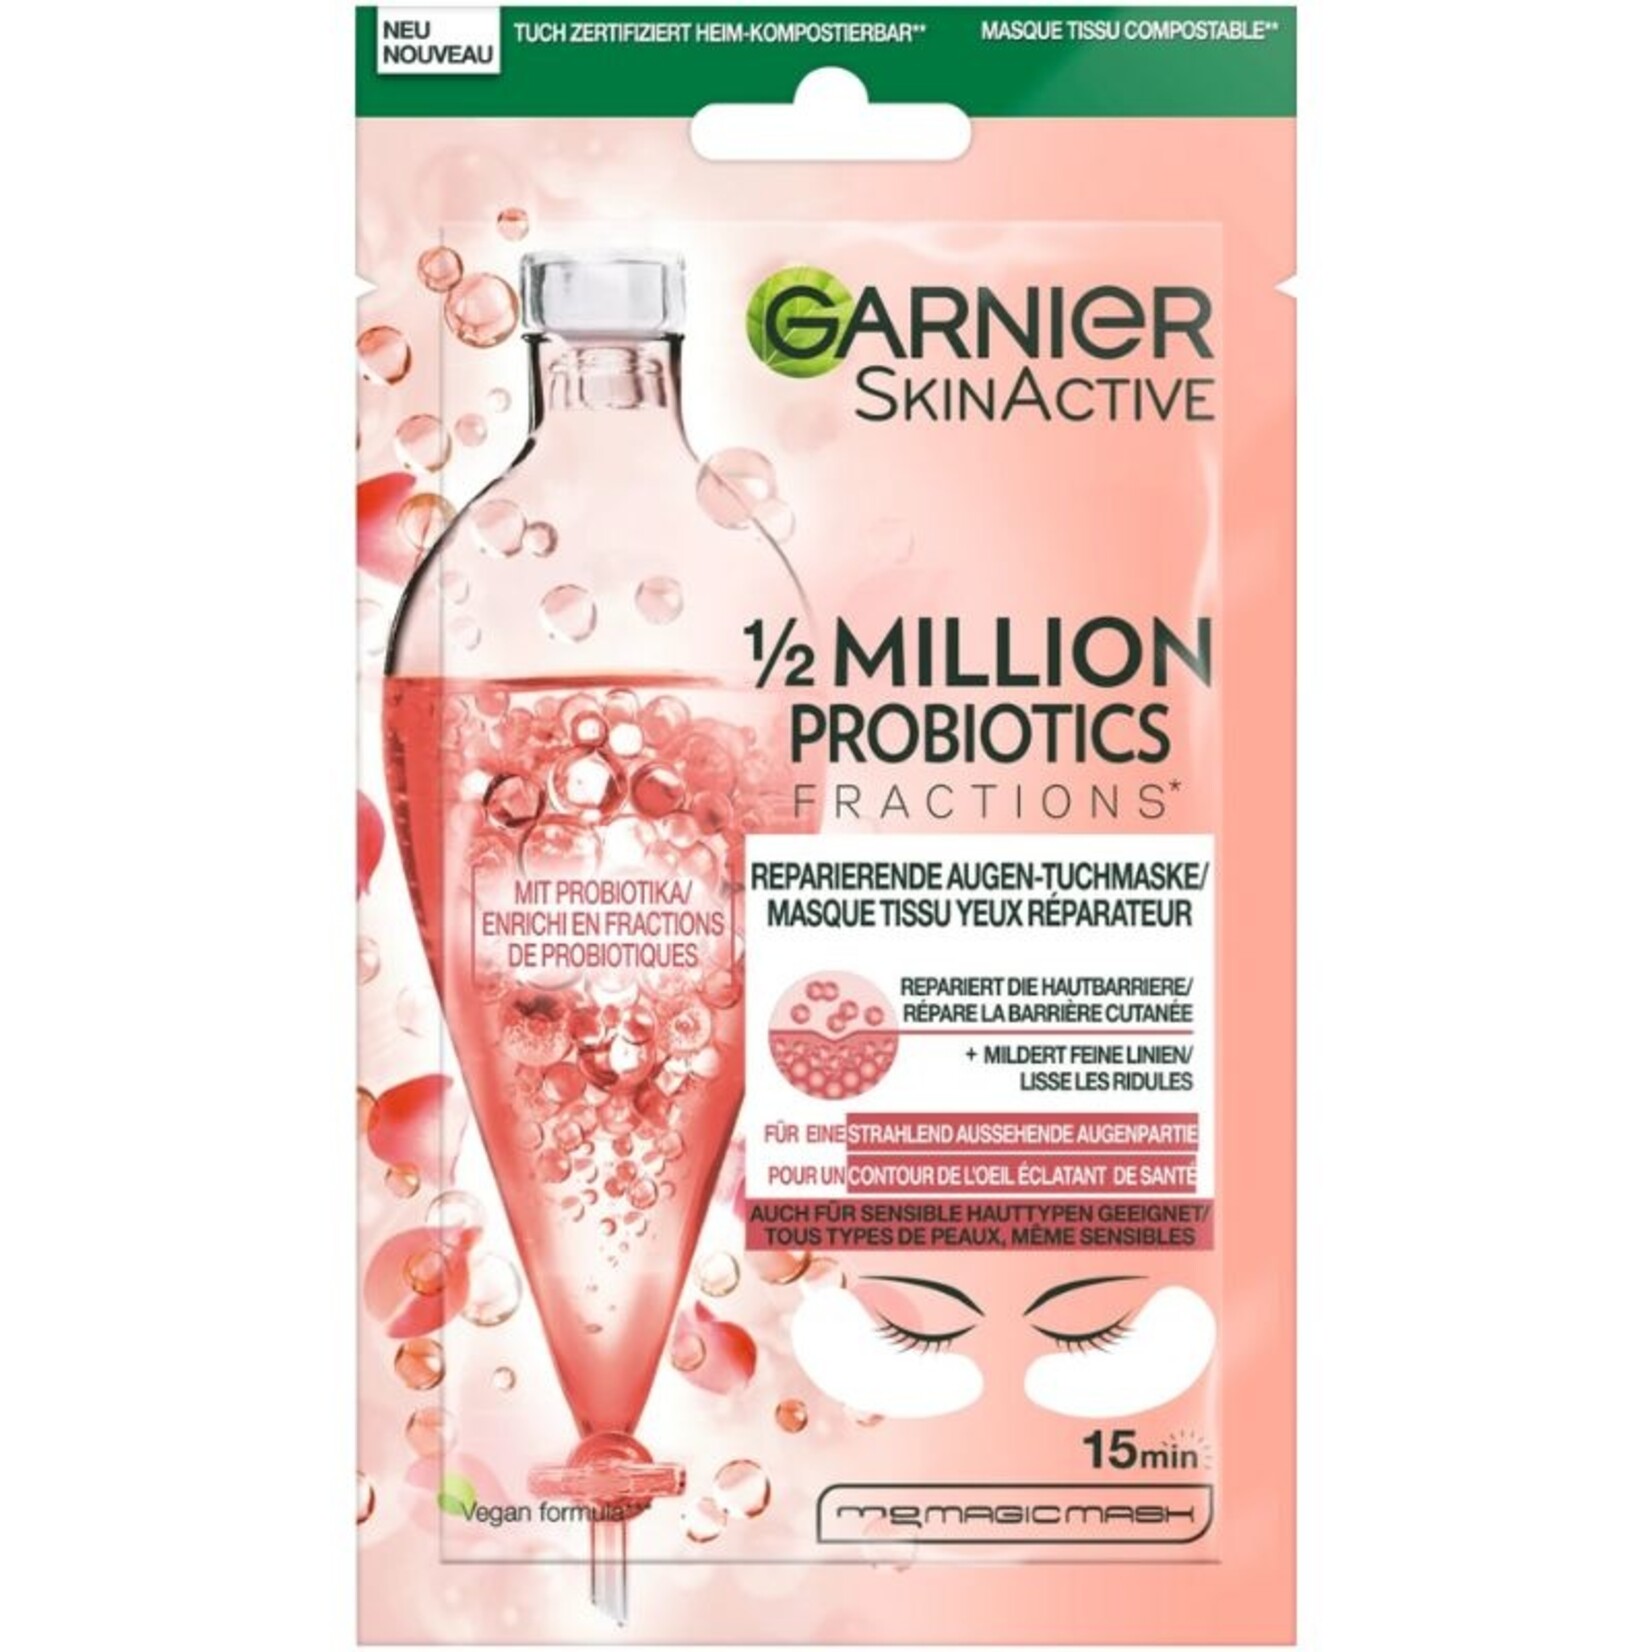 Garnier SkinActive - Augentuchmaske 1/2 Million Probiotics | Tuchmasken